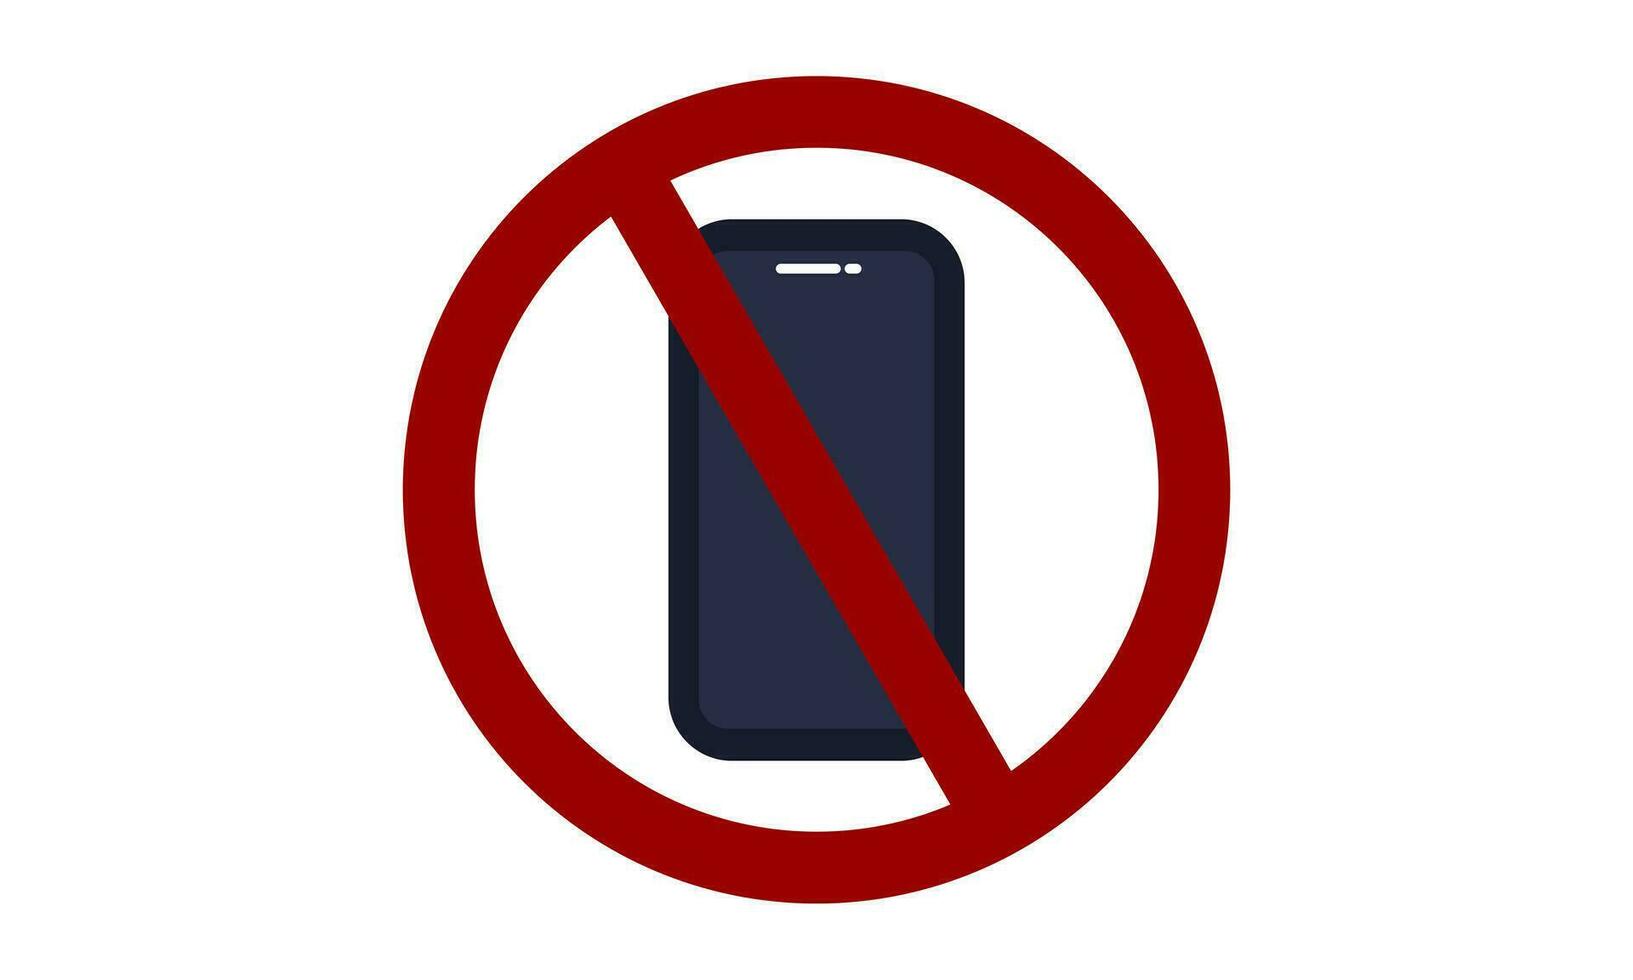 advertencia firmar prohibido desde utilizando el teléfono2 vector